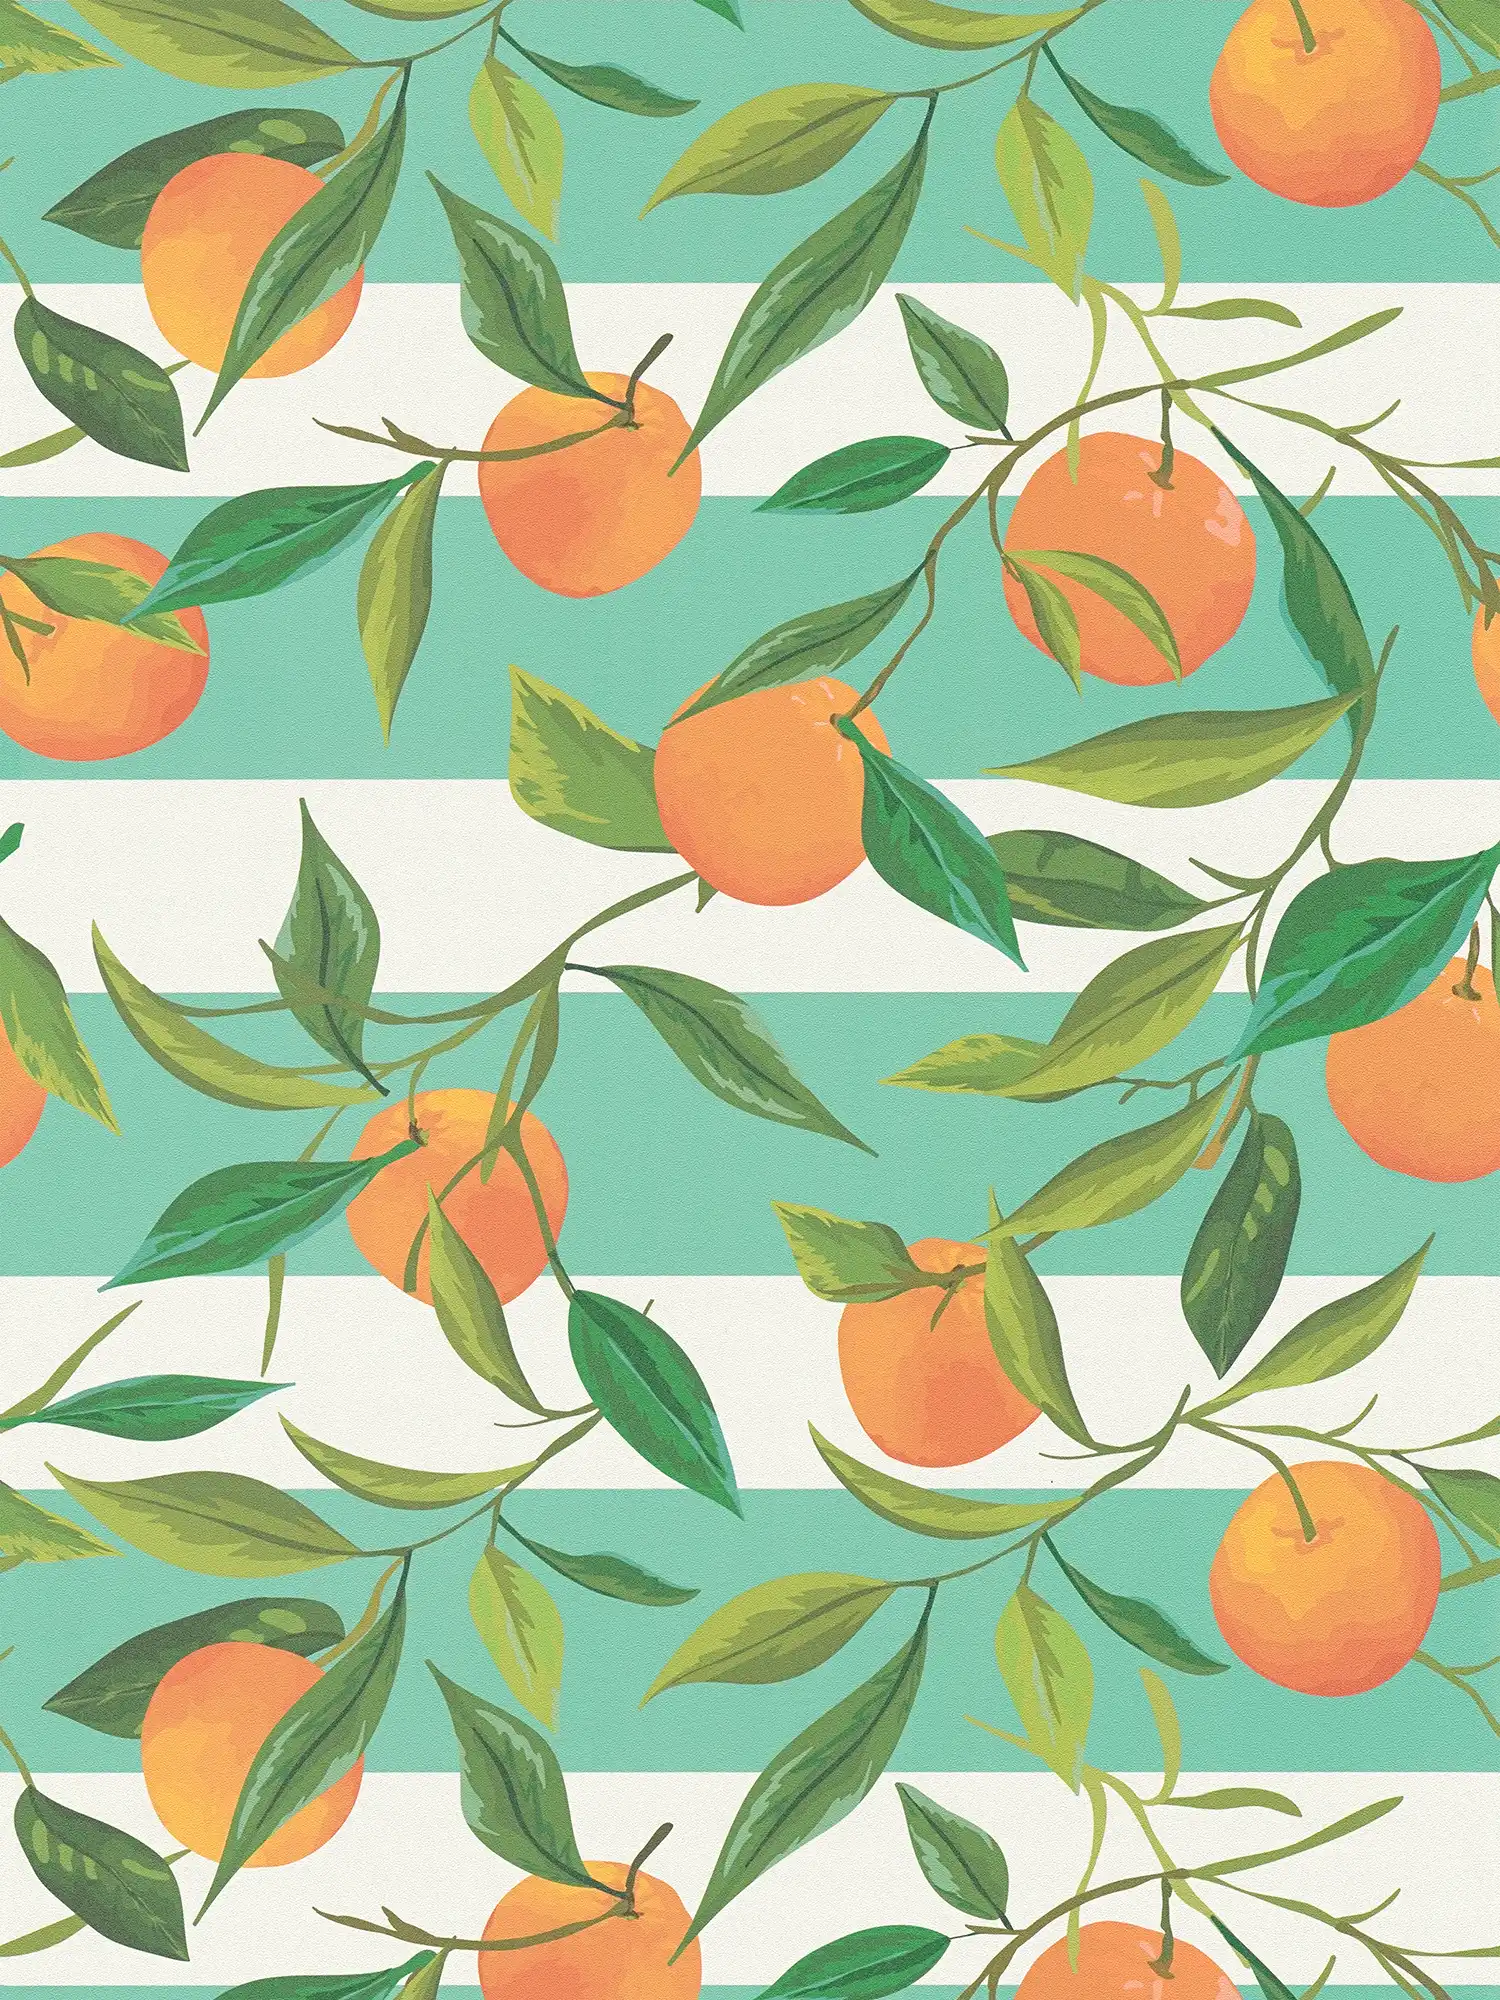         Gestreept vliesbehang met geschilderde sinaasappels en bladeren - turkoois, oranje, groen
    